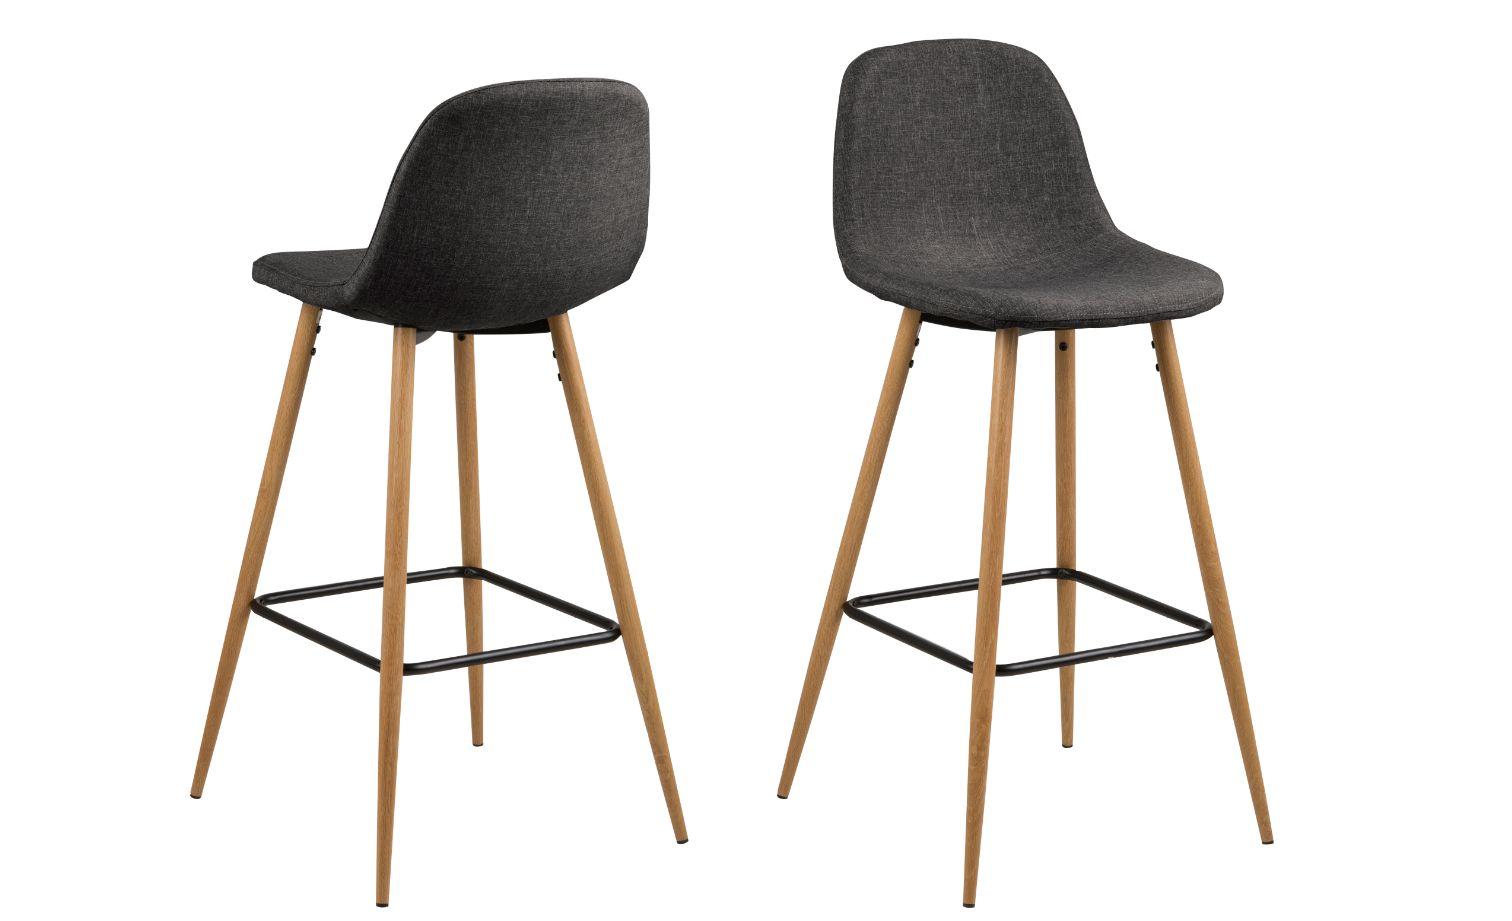 Barová Židle Wilma Výška 101cm - barvy dubu/tmavě šedá, Basics, kov/textil (46,6/101/51cm)